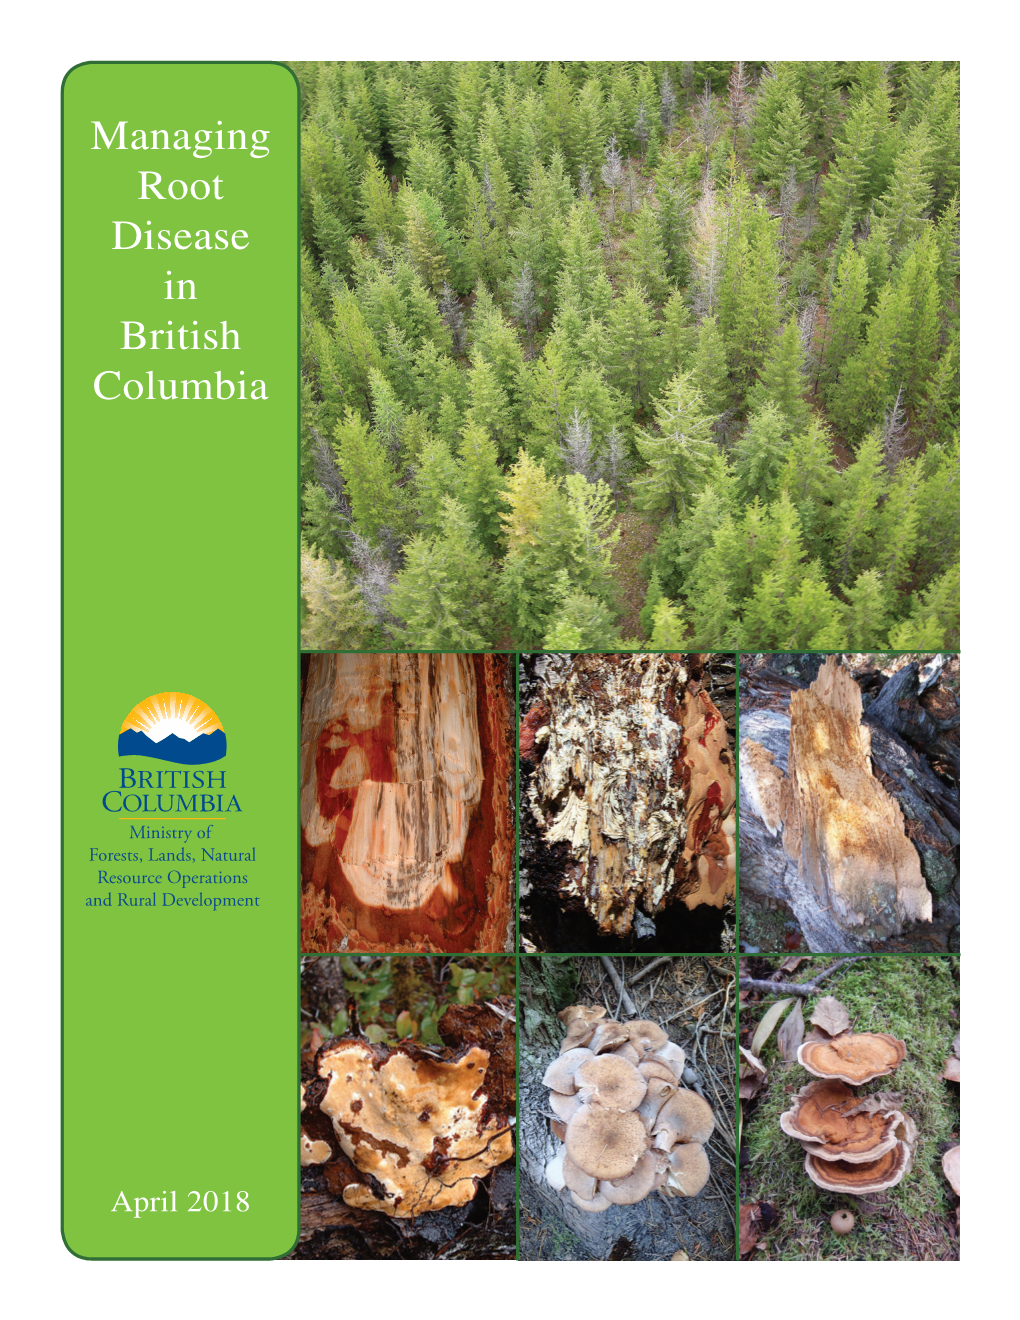 Managing Root Disease in British Columbia